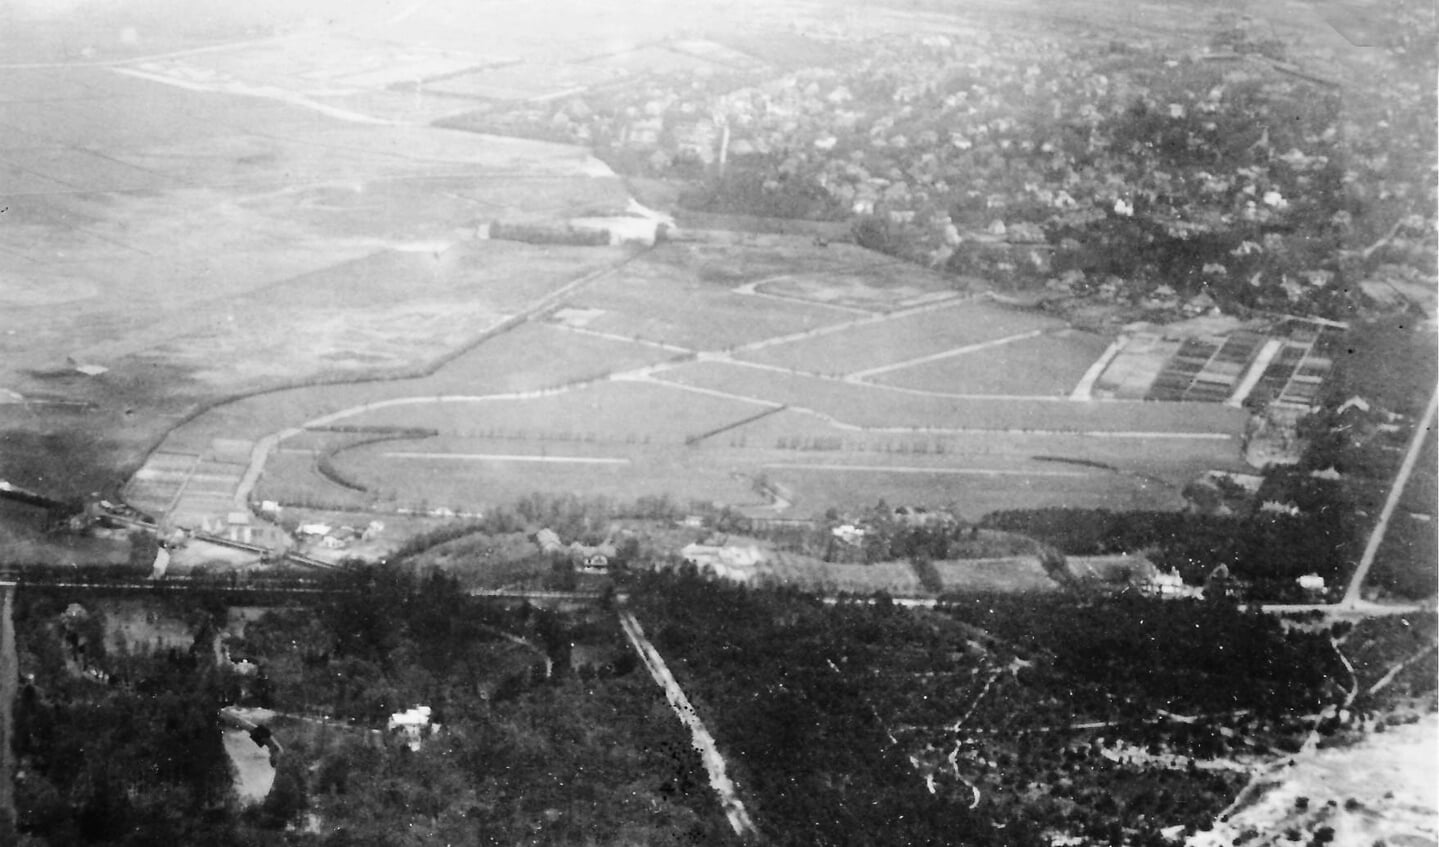 Luchtfoto van Cruysbergen uit 1925. Duidelijk zijn de afzandingssloten, de kwekerijen en zelfs de omtrek van de voormalige renbaan te herkennen. (foto Gemeentearchief).